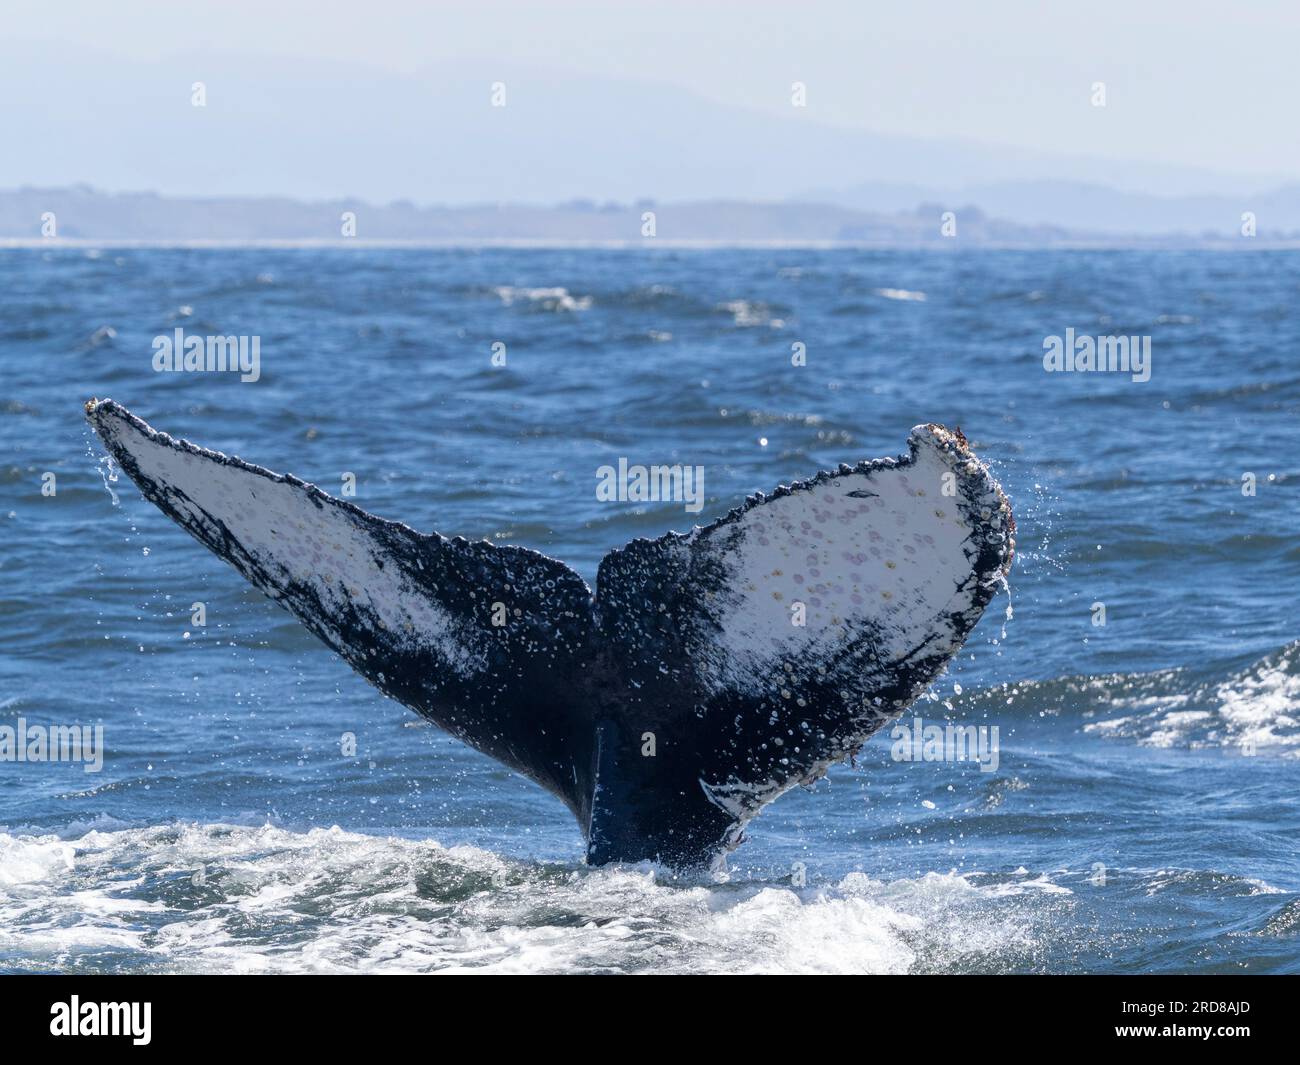 Une baleine à bosse adulte (Megaptera novaeangliae) plonge dans le Monterey Bay Marine Sanctuary, Californie, États-Unis d'Amérique, Amérique du Nord Banque D'Images